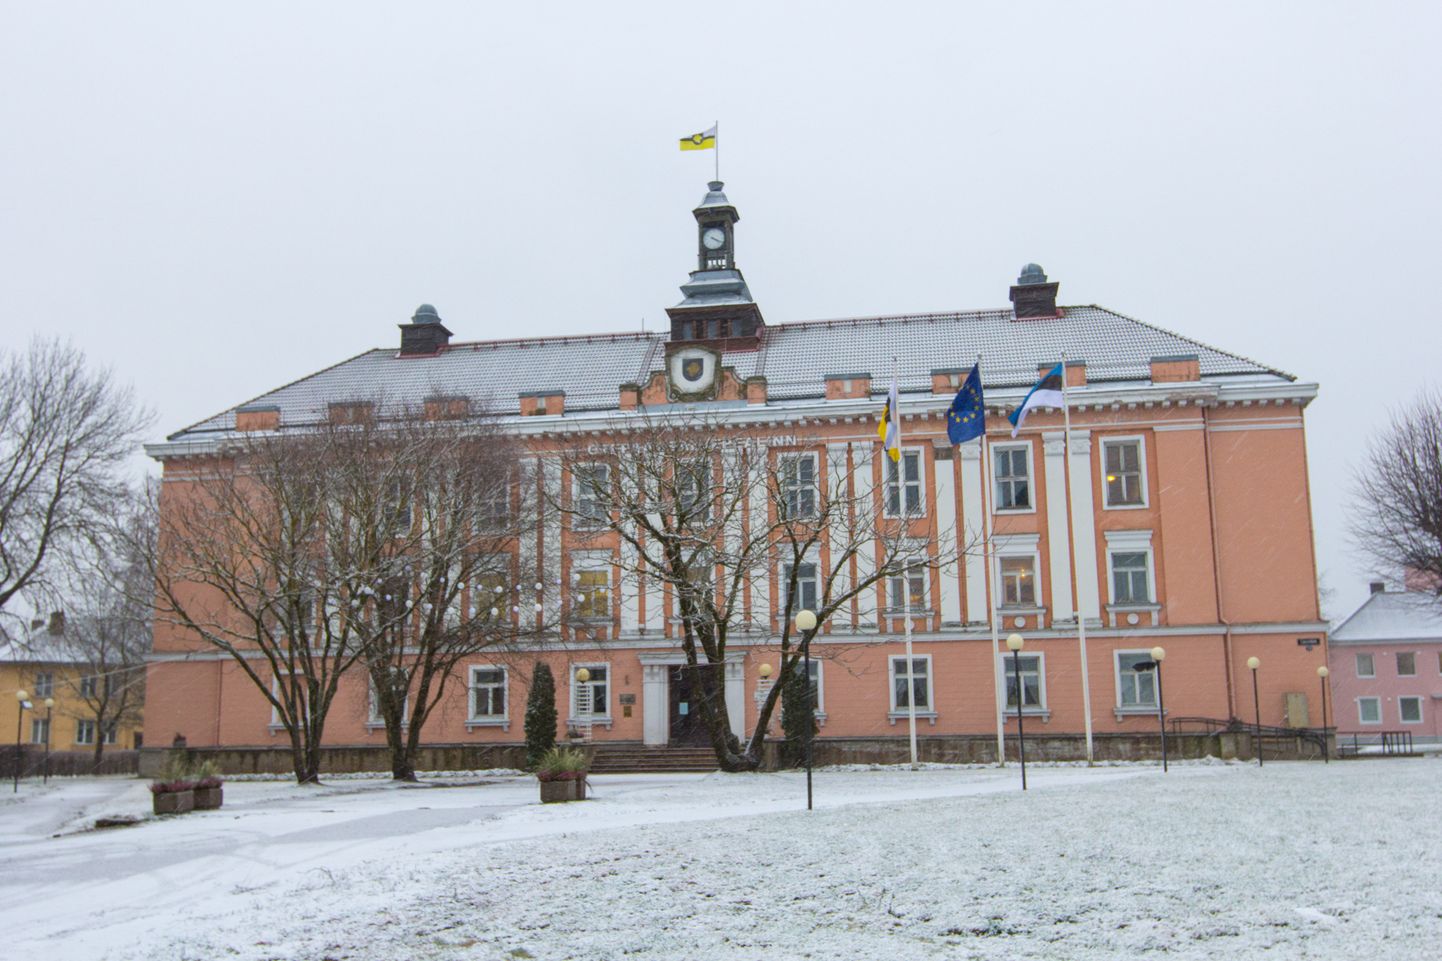 Stalini ajal Narva ja Tartu raekodadest inspireerituna rajatud kunagise rajooni täitevkomitee ja praeguse vallavalitsuse hoone Otepääl, mille aknad ettevõte Novabild vahetama pidi.